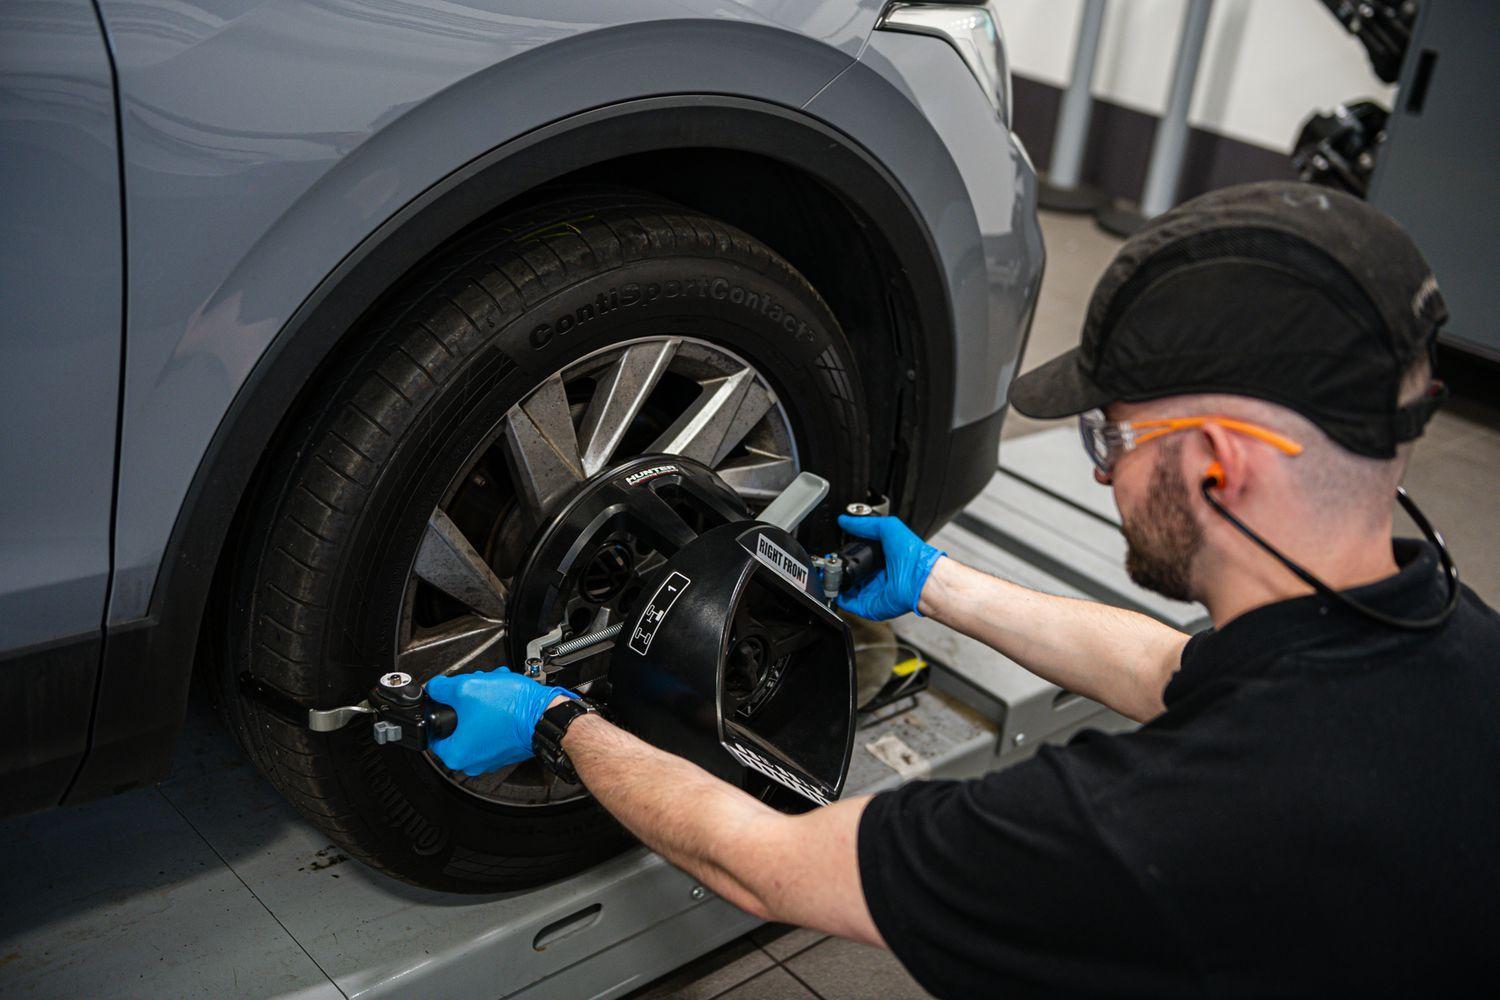 Volkswagen Technician fixes tyre on Volkswagen vehicle